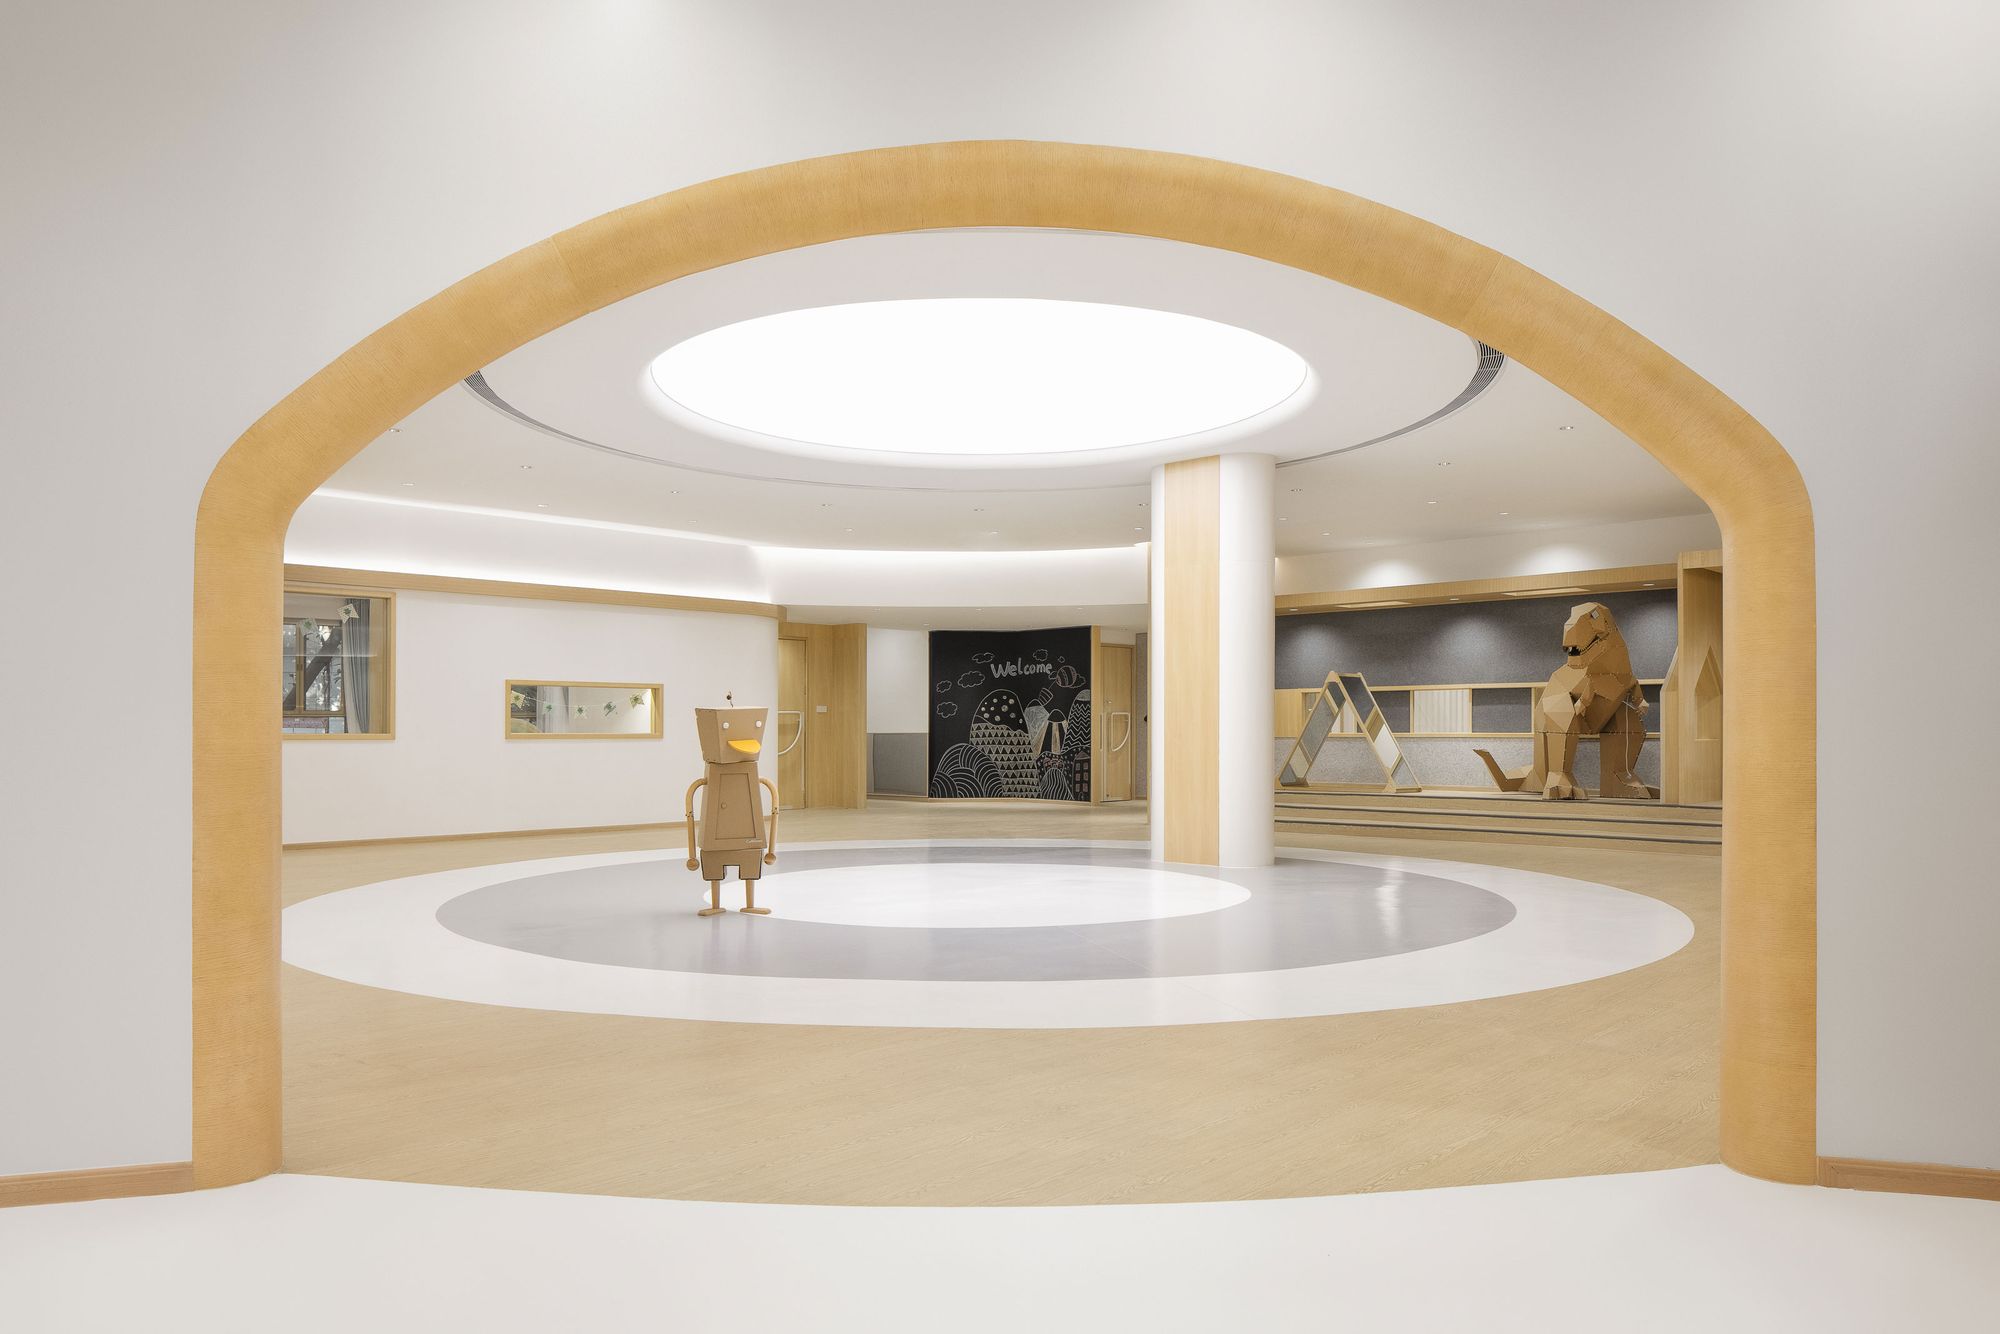 图片[8]|皇冠梦想国际幼儿园|ART-Arrakis | 建筑室内设计的创新与灵感